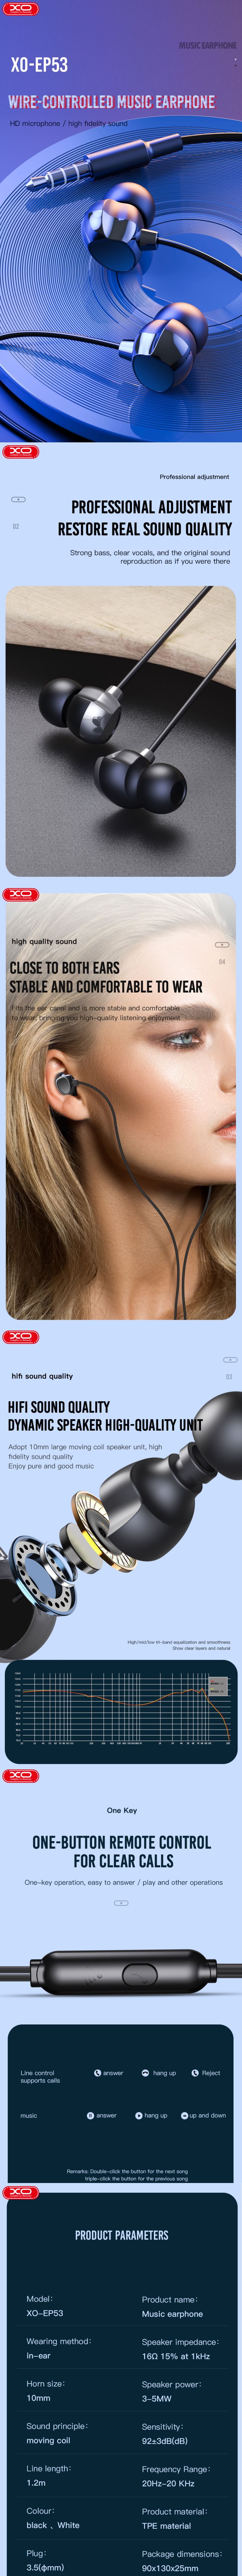 XO Fones de ouvido com fio EP53 jack 3,5 mm intra-auricular branco